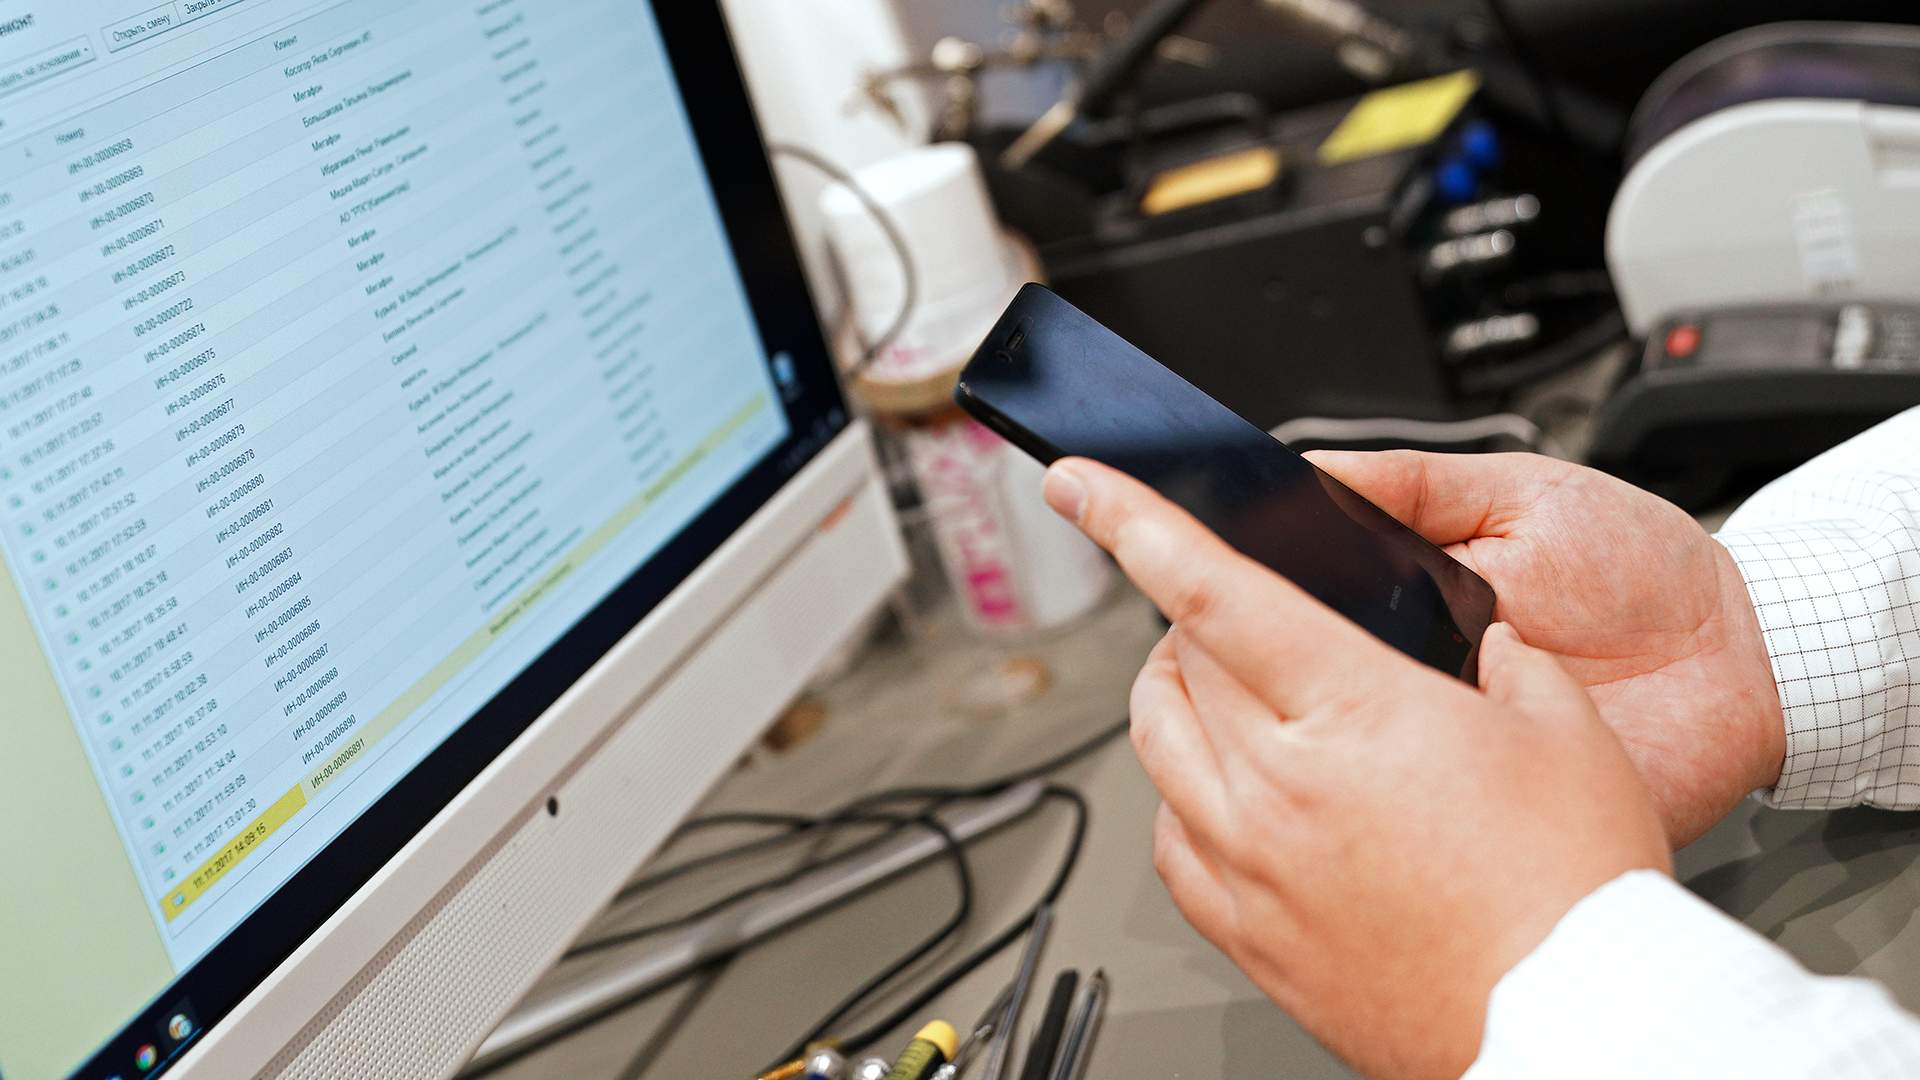 Сдаем телефон в ремонт: как защитить личные данные и деньги